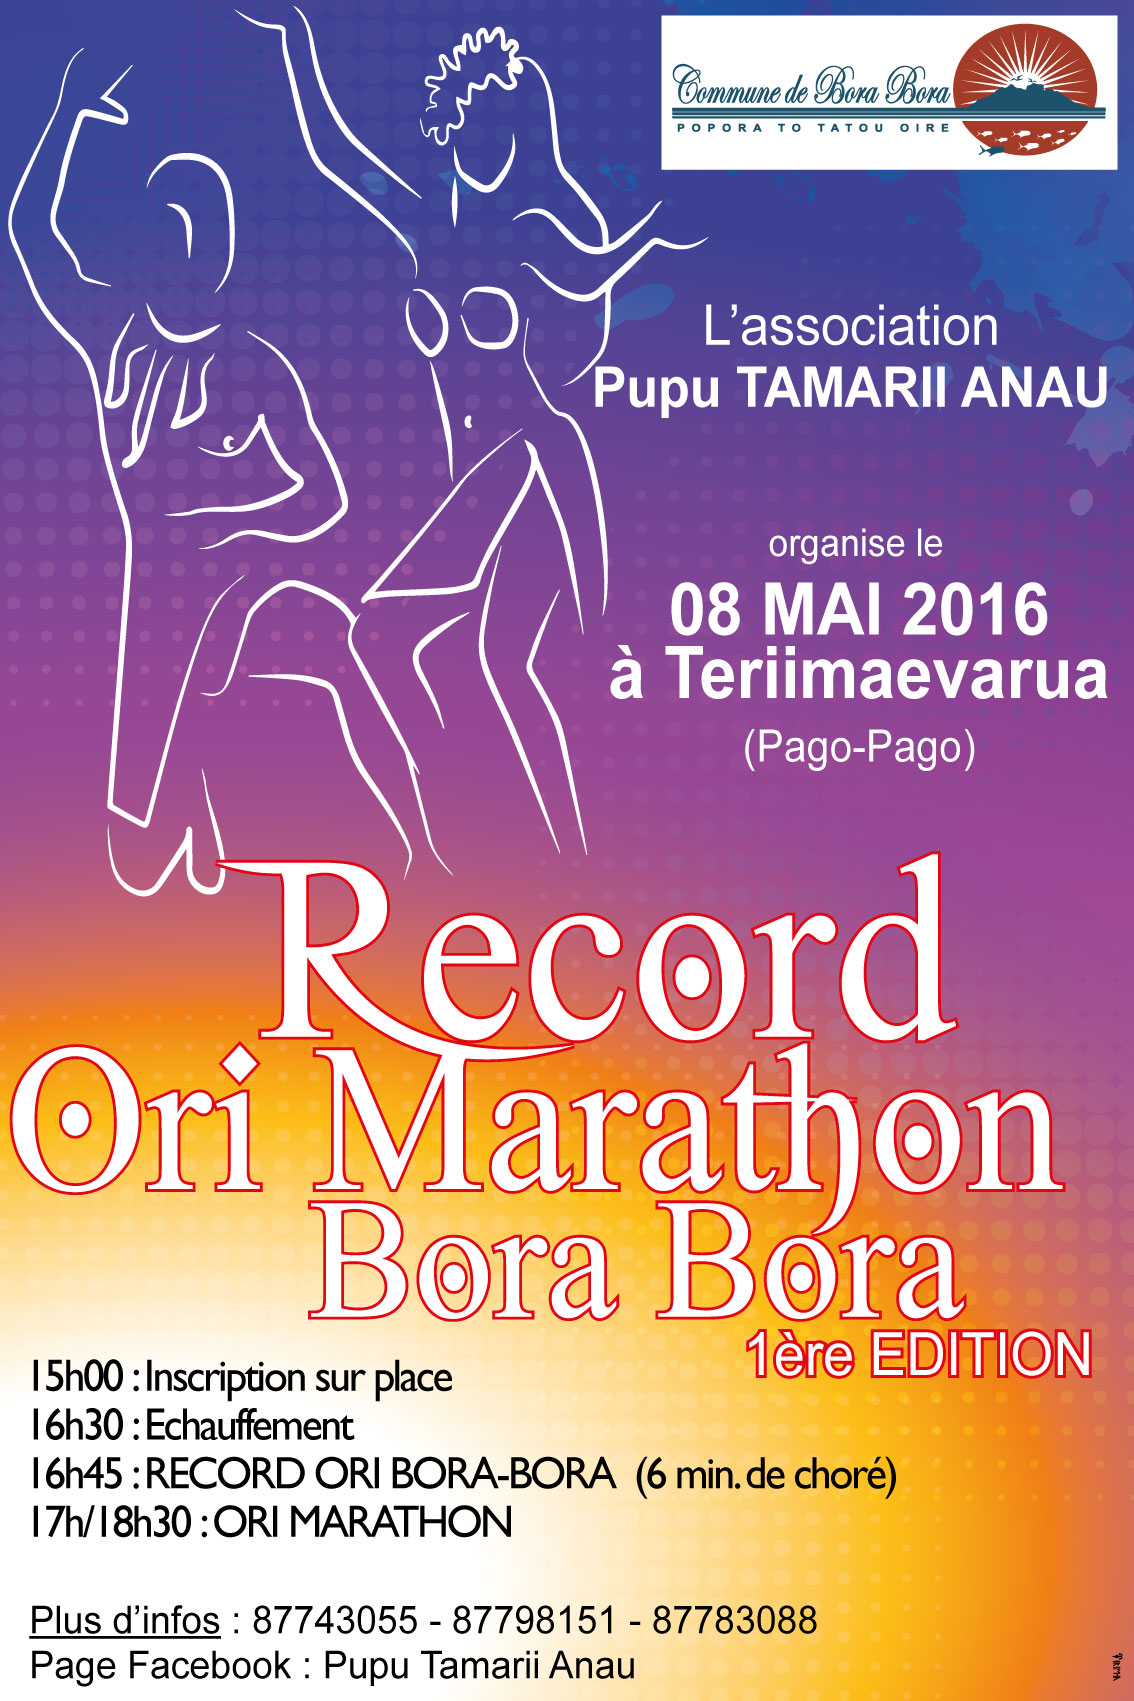 'ori tahiti : Bora Bora vise aussi un record !